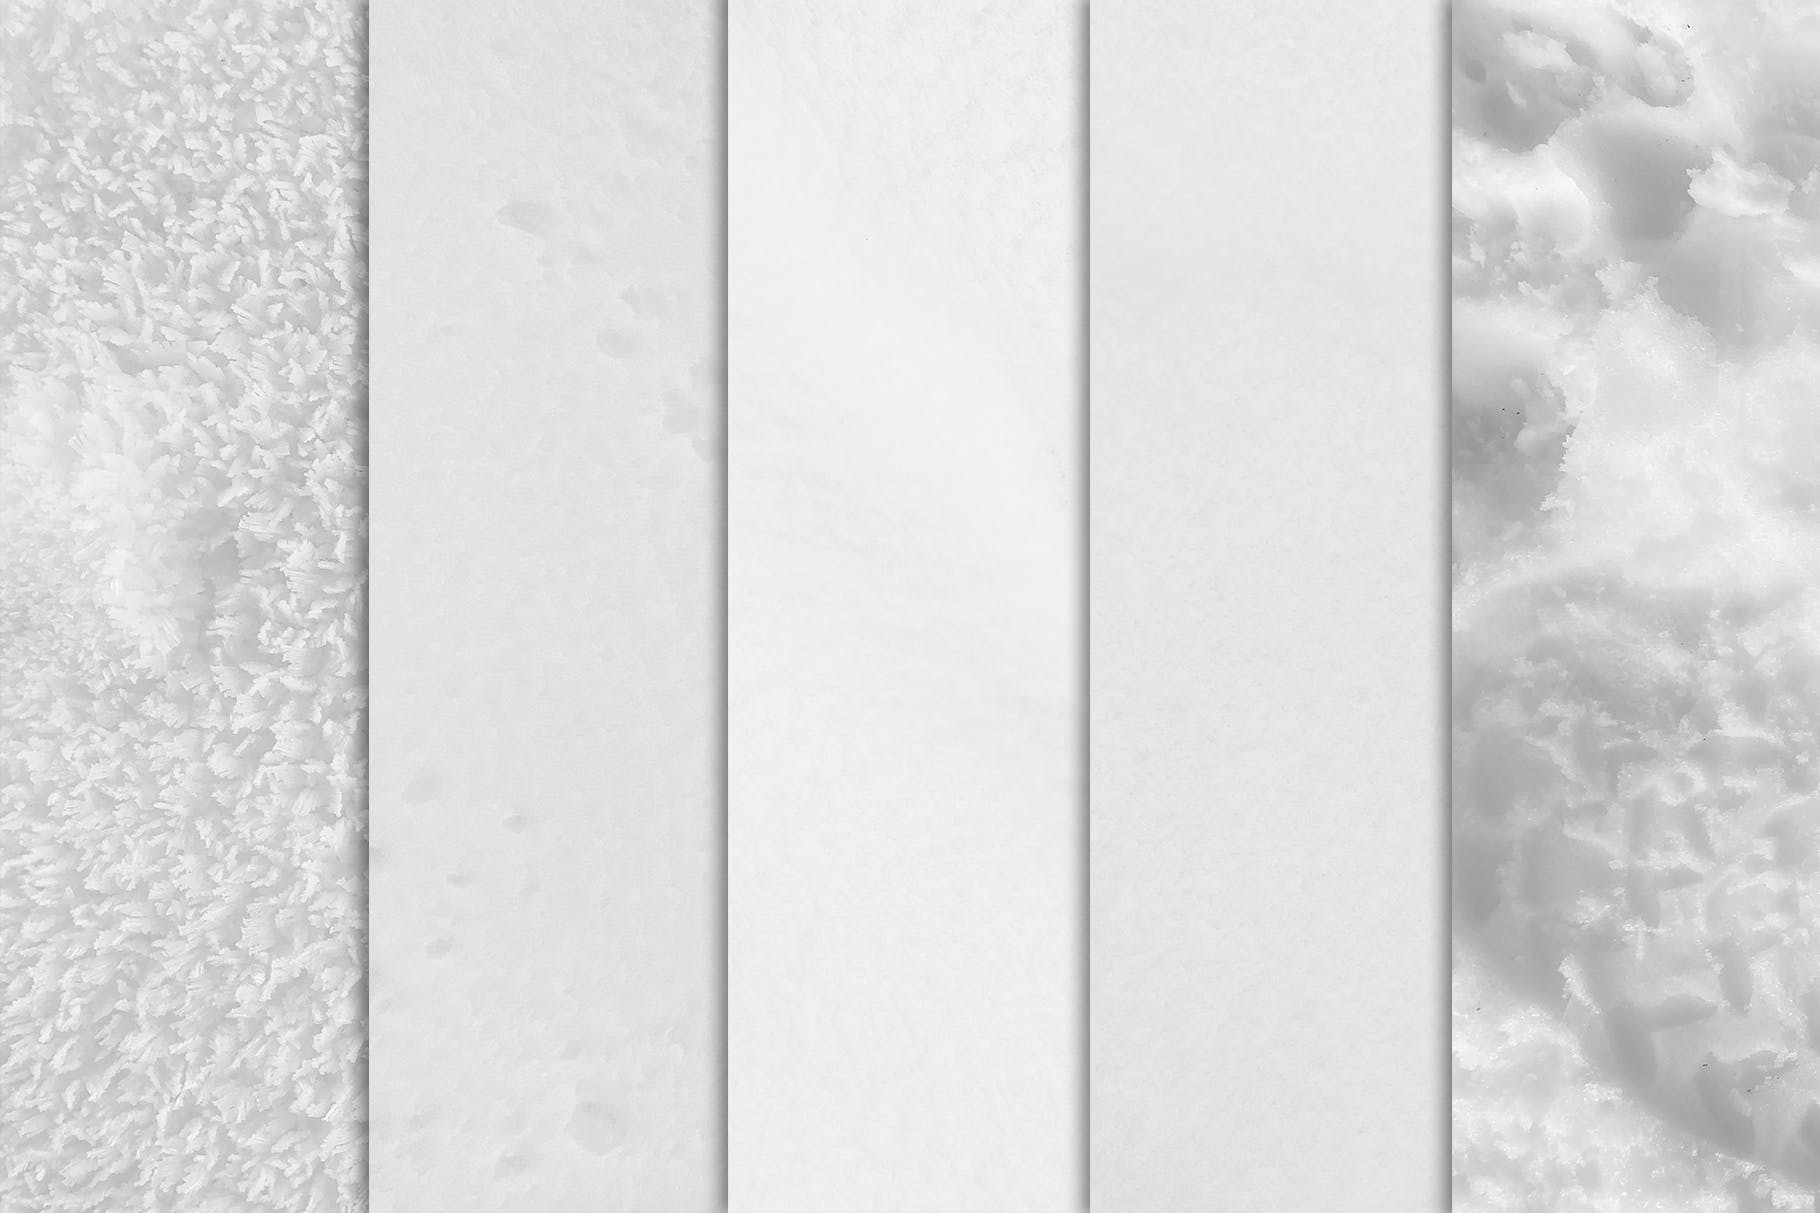 10个冬季白雪纹理素材 Snow Textures x10 图片素材 第3张